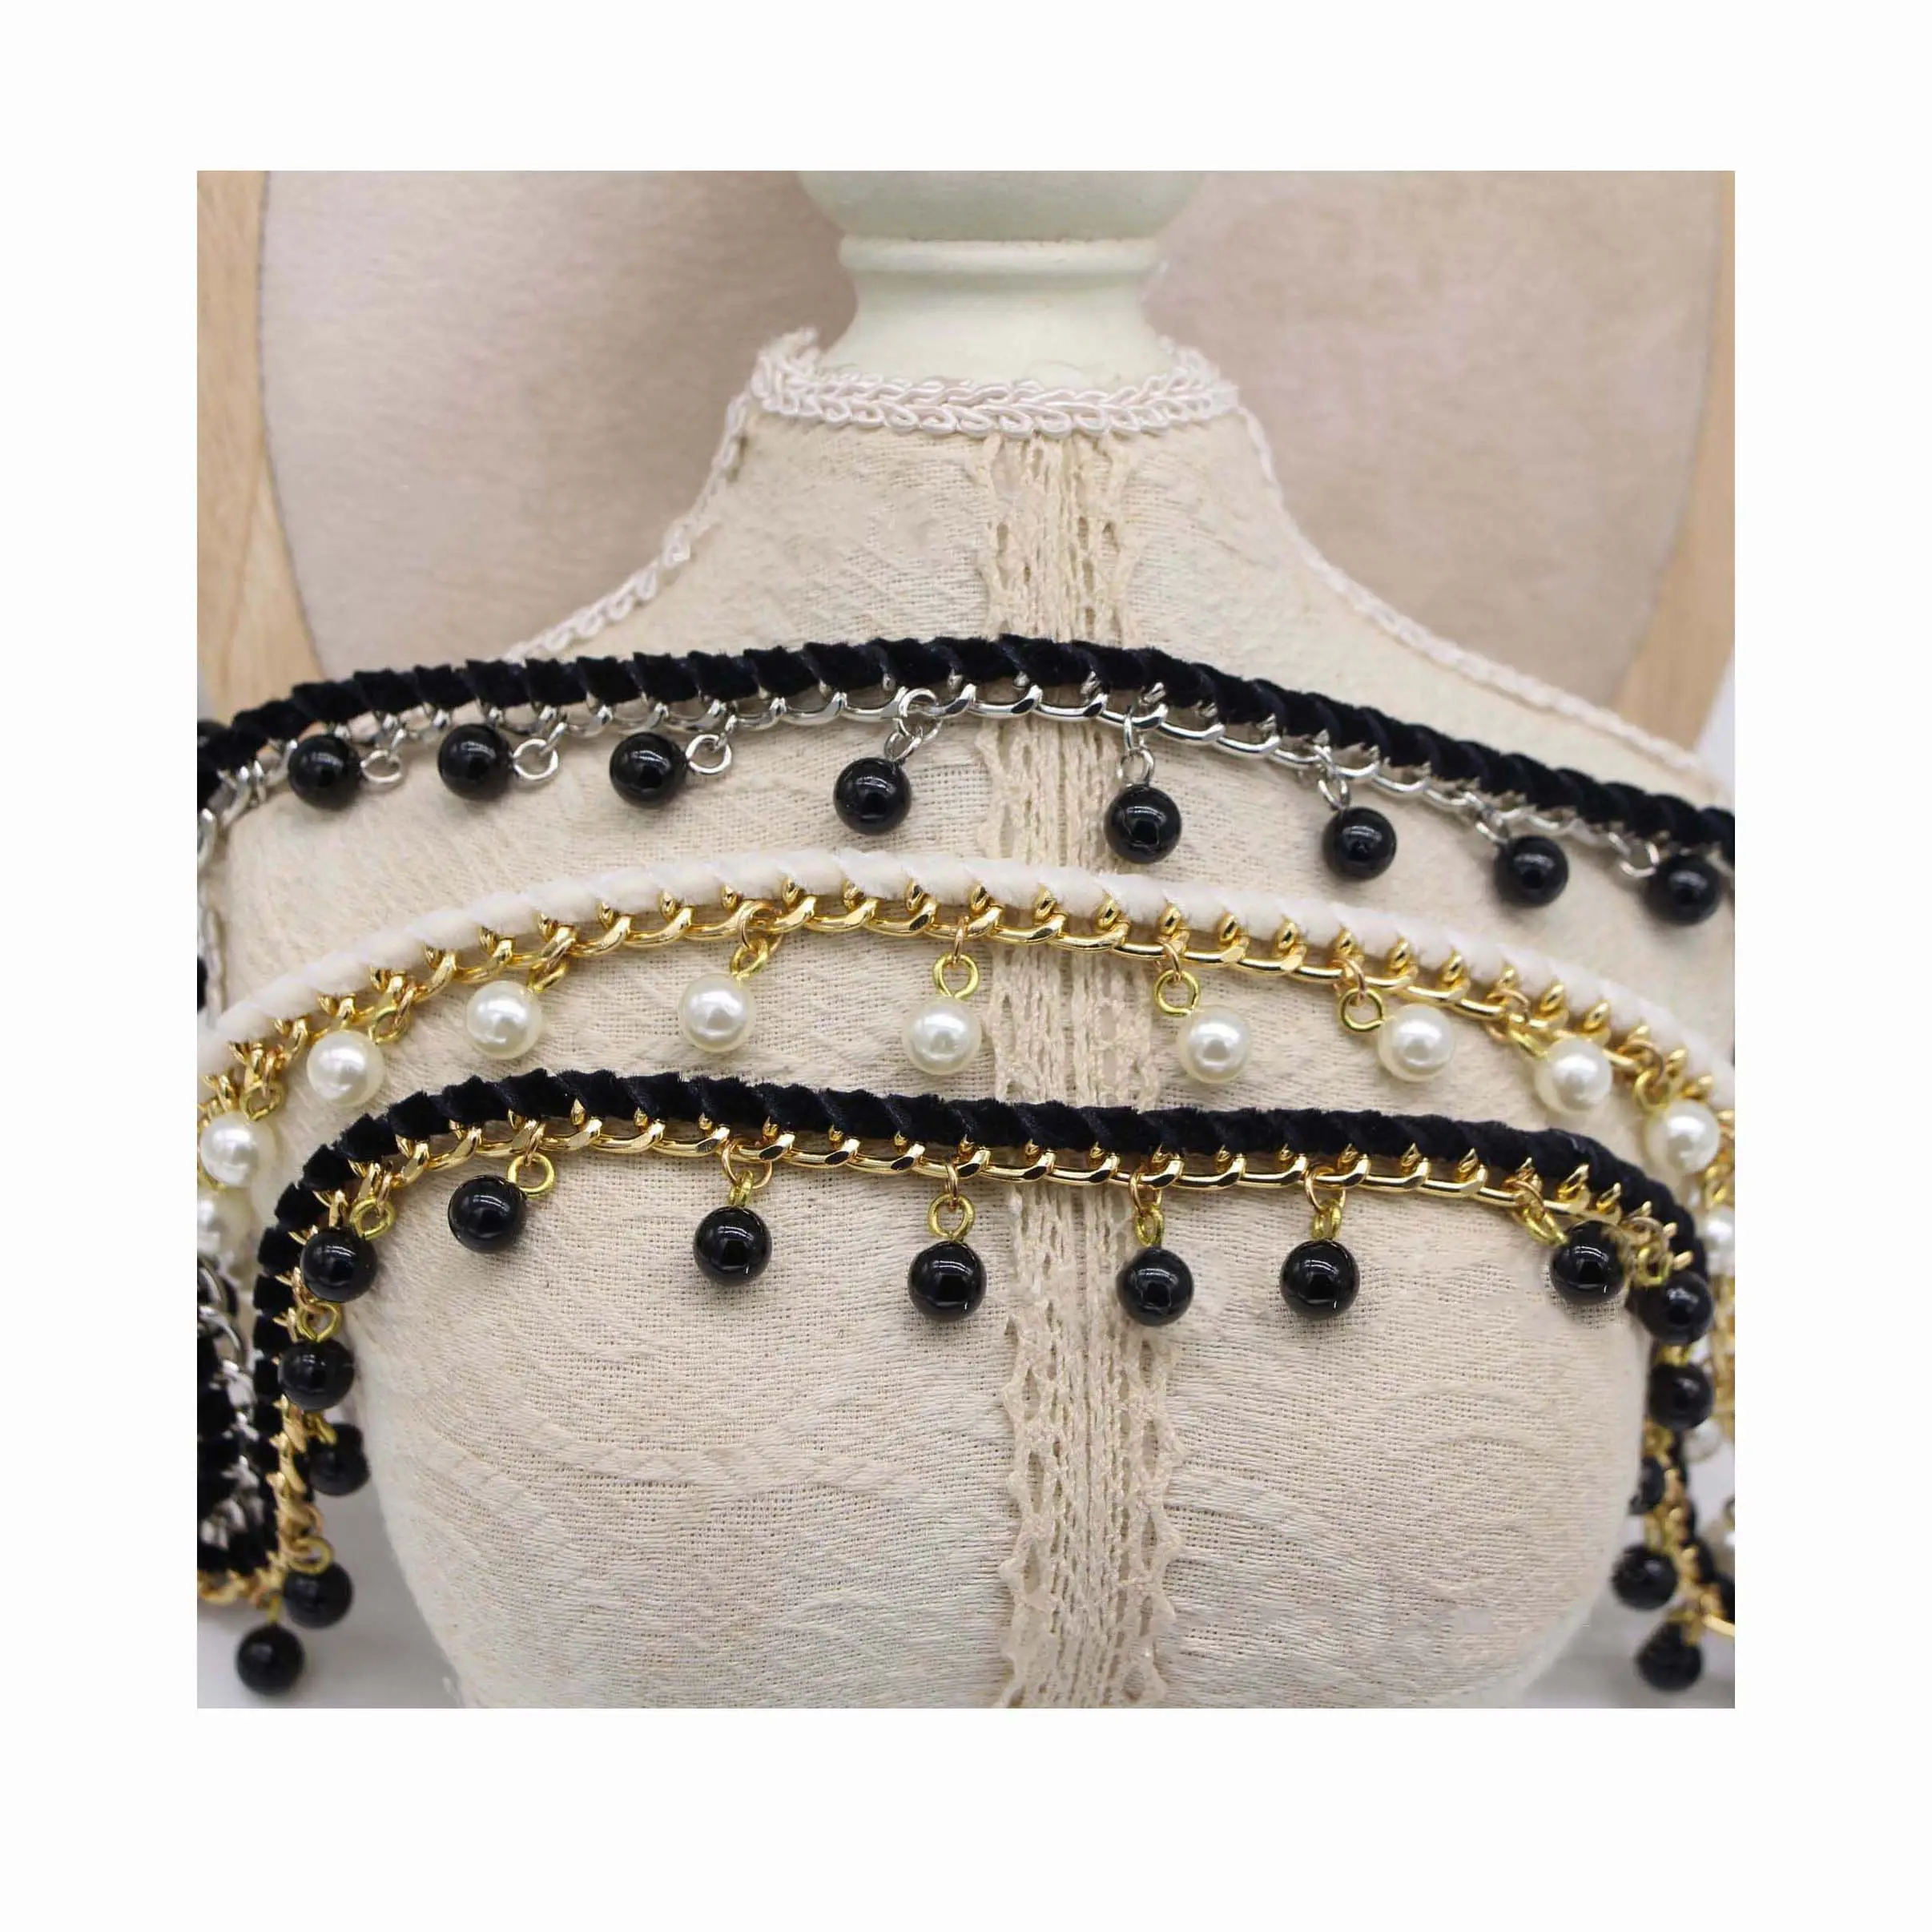 18mm bricolage vêtement fait à la main en métal dentelle sangle velours ceinture chaîne suspendus perles vêtements col manchette décoratif couture textile garniture